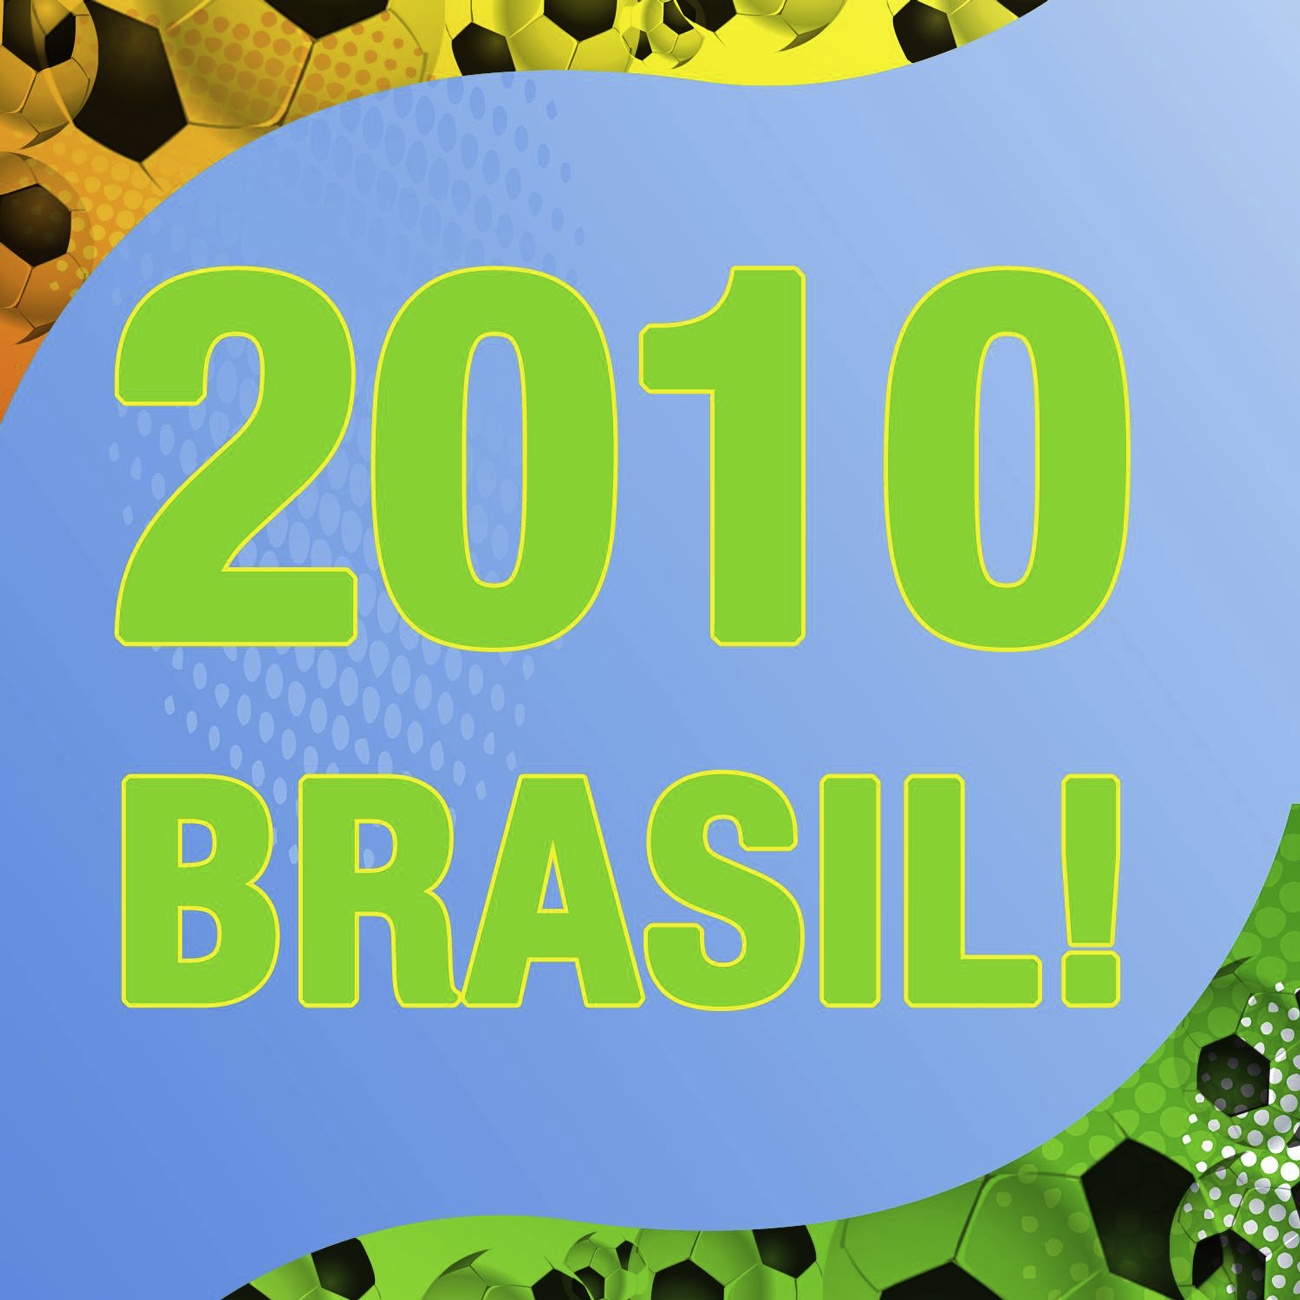 2010 Brasil!